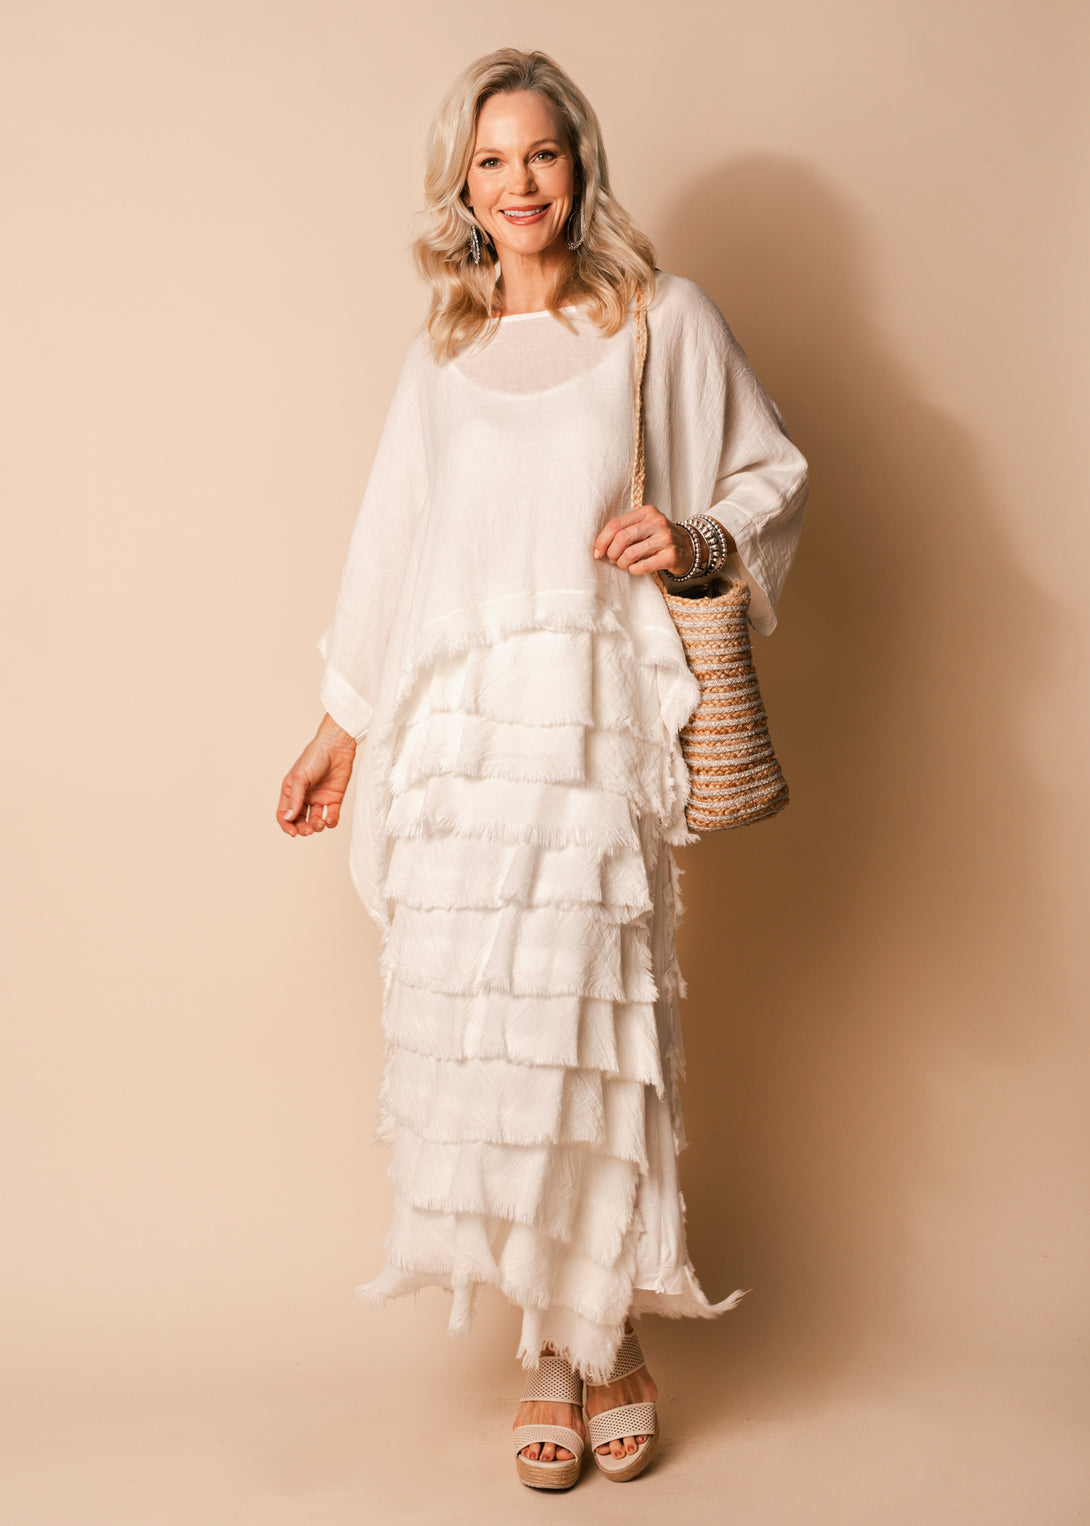 Kalla Linen Top in Cream - Imagine Fashion